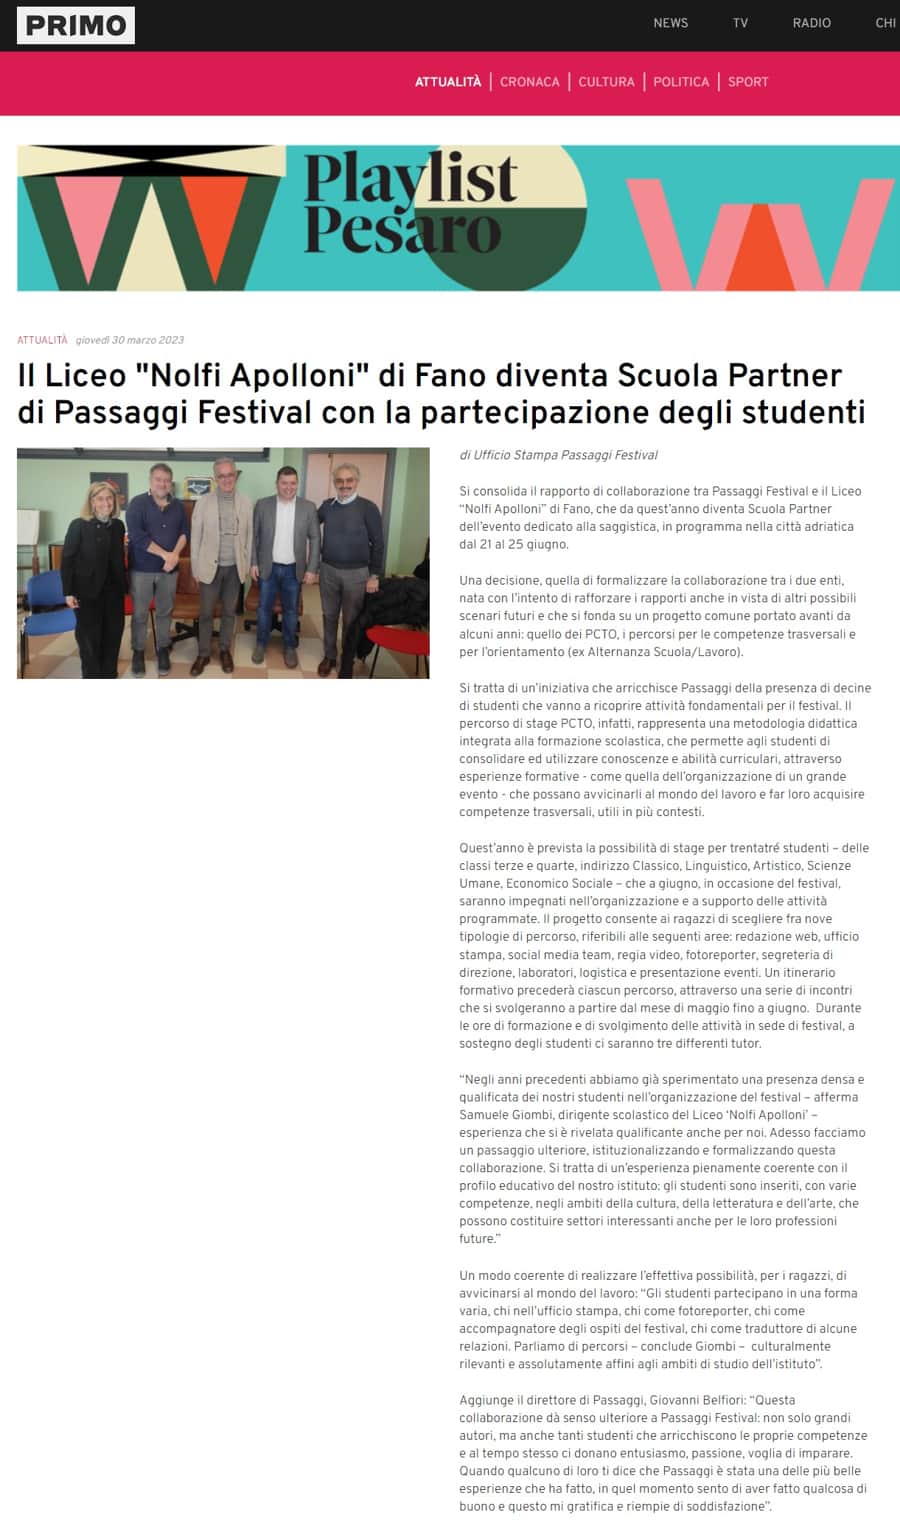 Primo_Il_Liceo_Nolfi_Apolloni_di_Fano_diventa_Scuola_Partner_di_Passaggi_Festival_con_la_partecipazione_degli_studenti